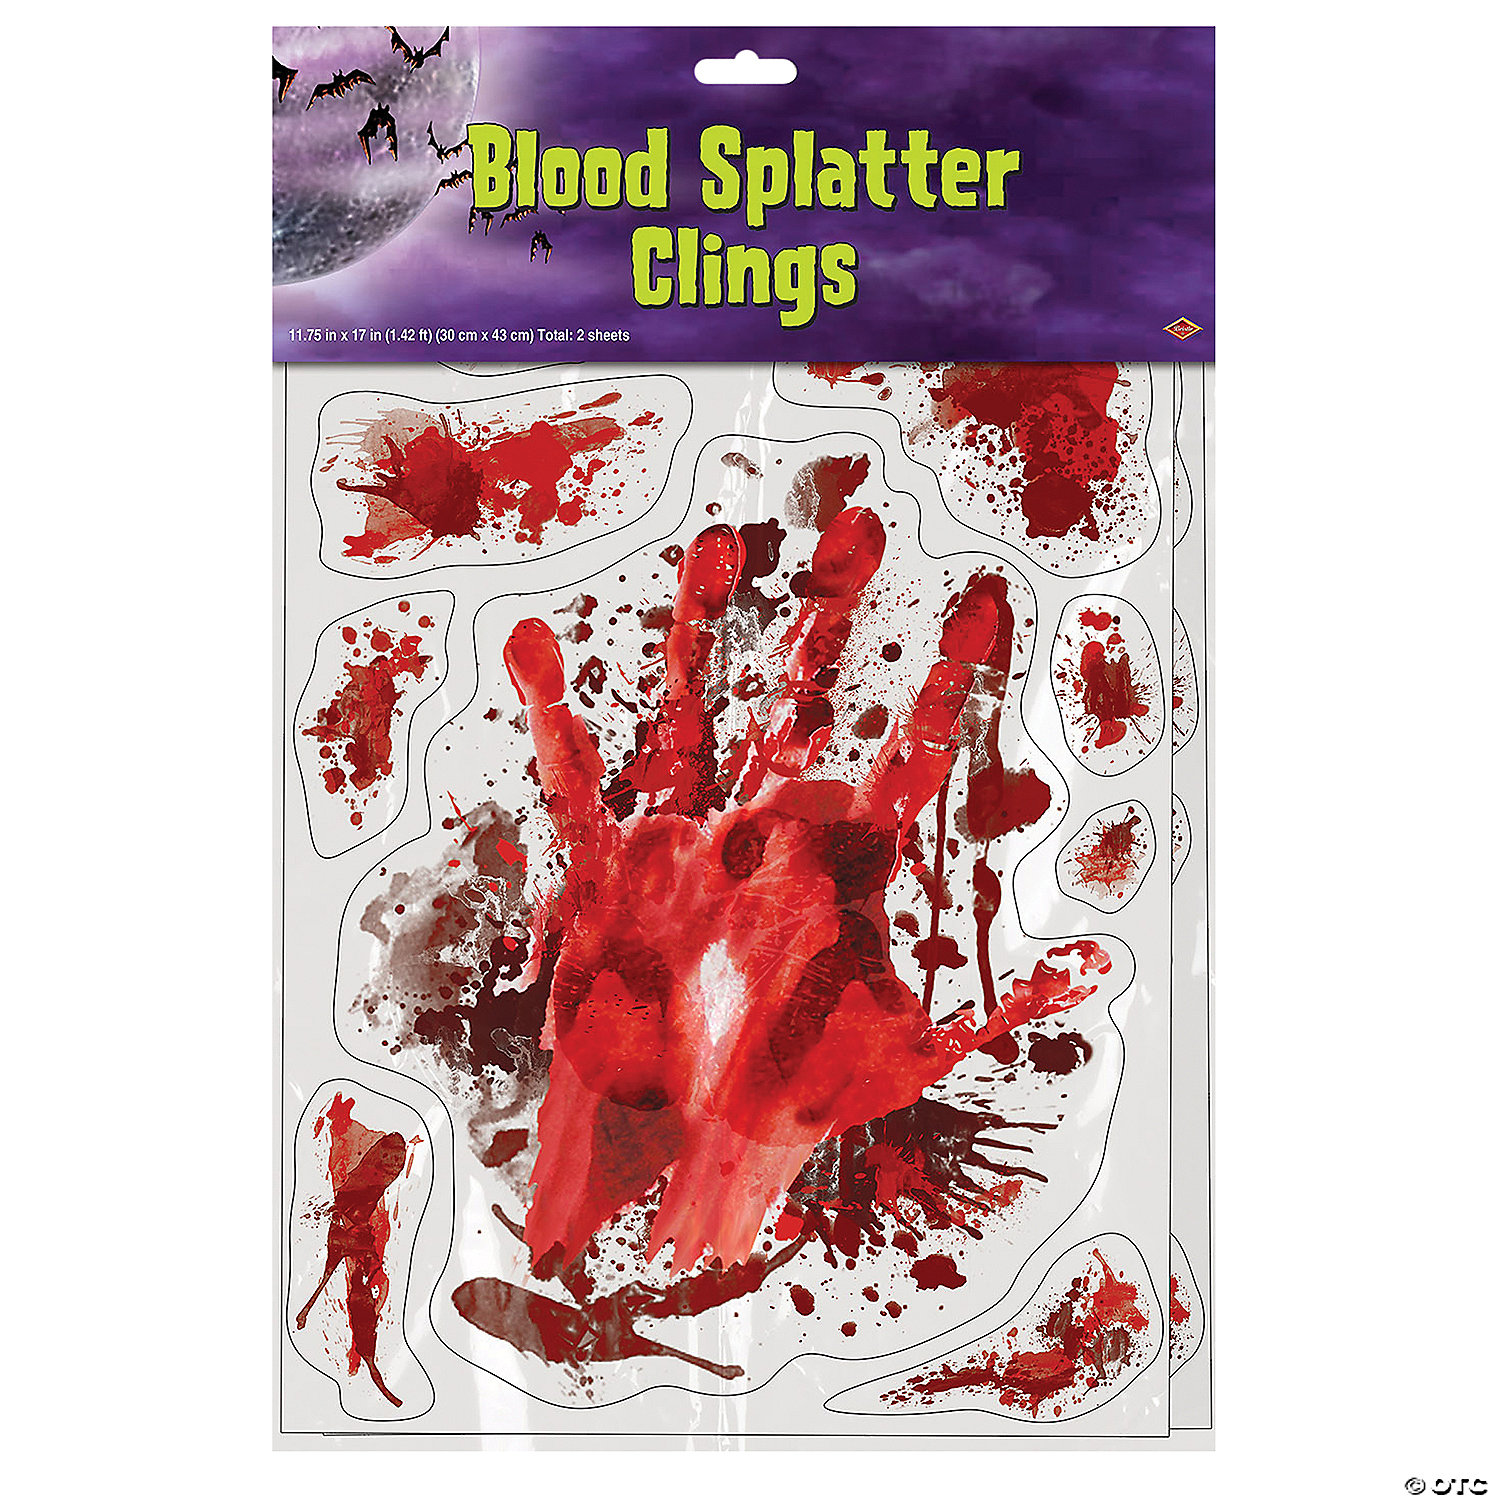 BLOOD SPLATTER WINDOW CLINGS - HALLOWEEN